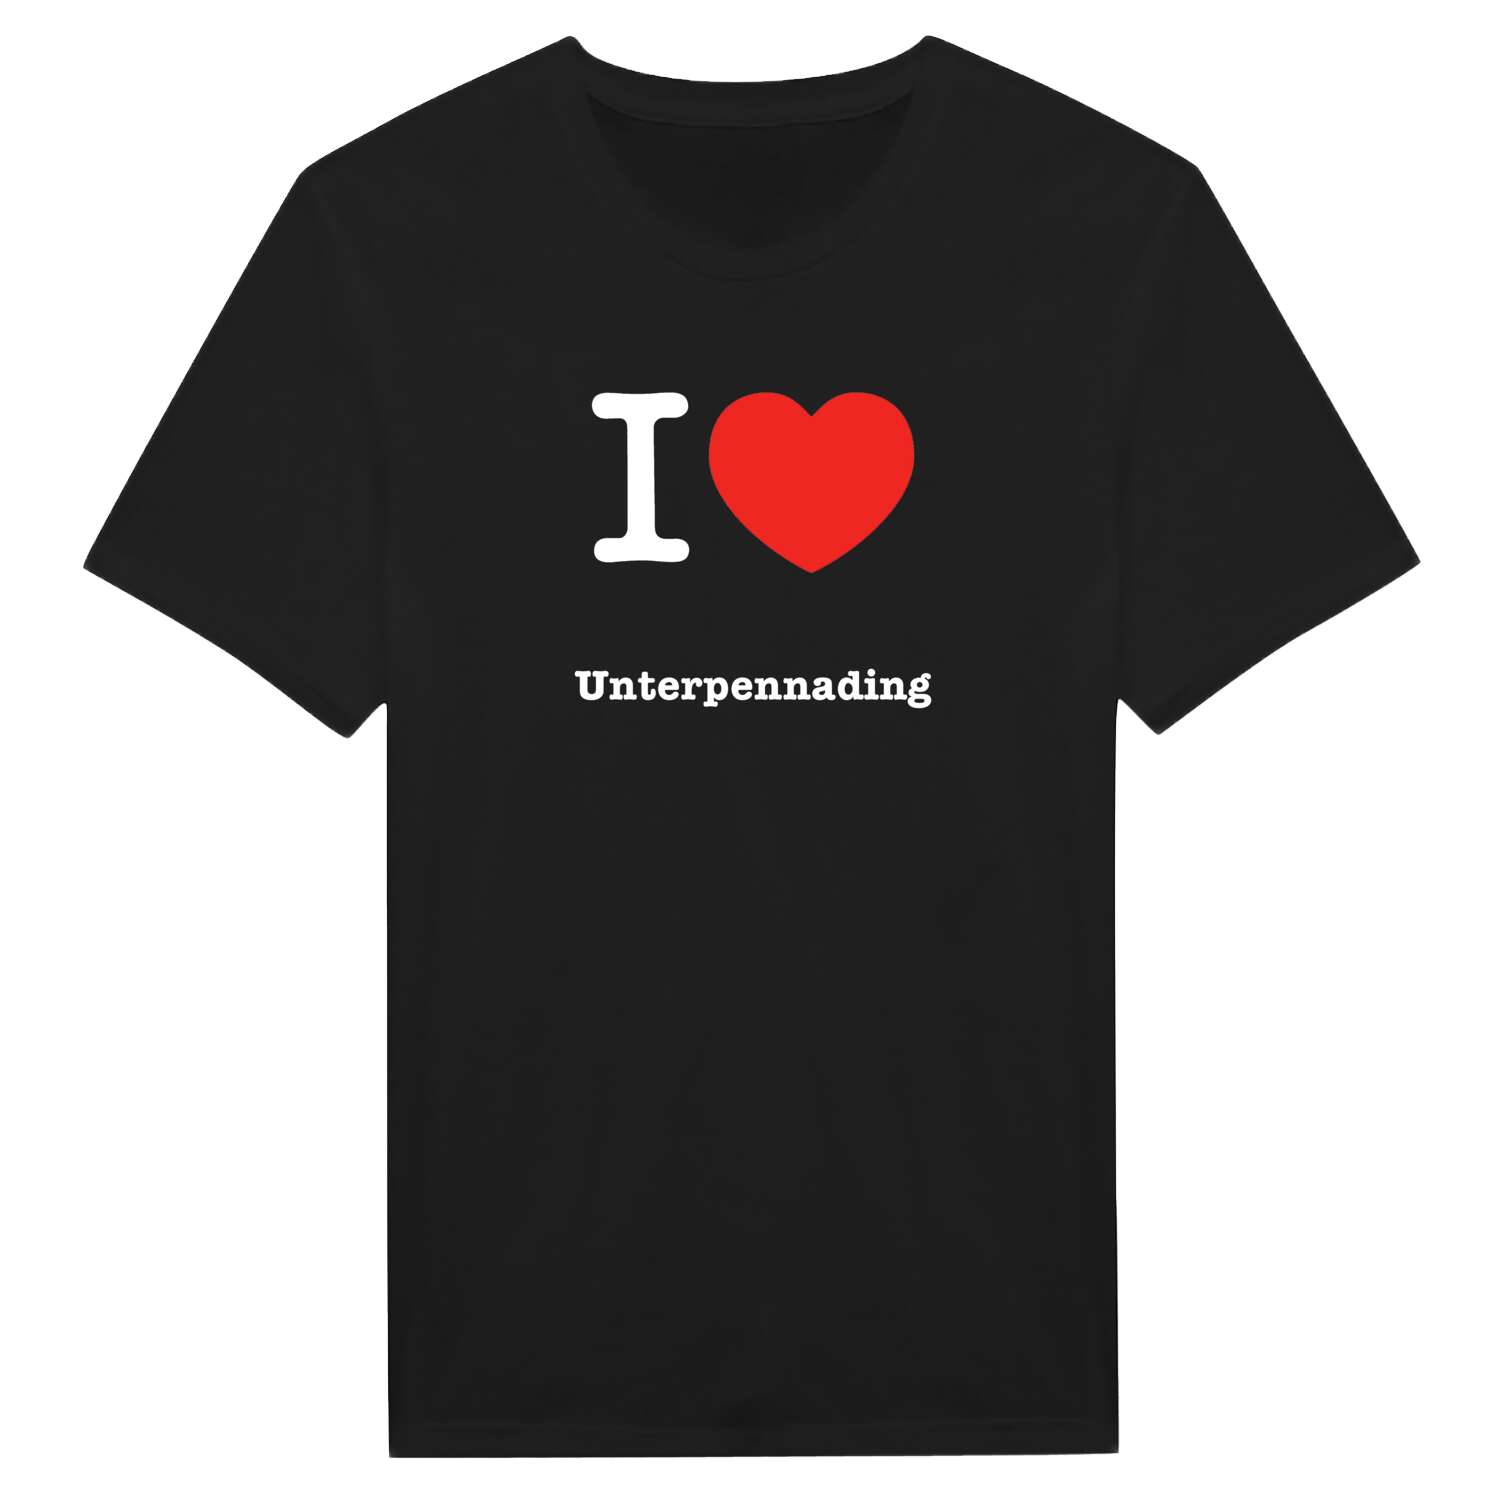 Unterpennading T-Shirt »I love«